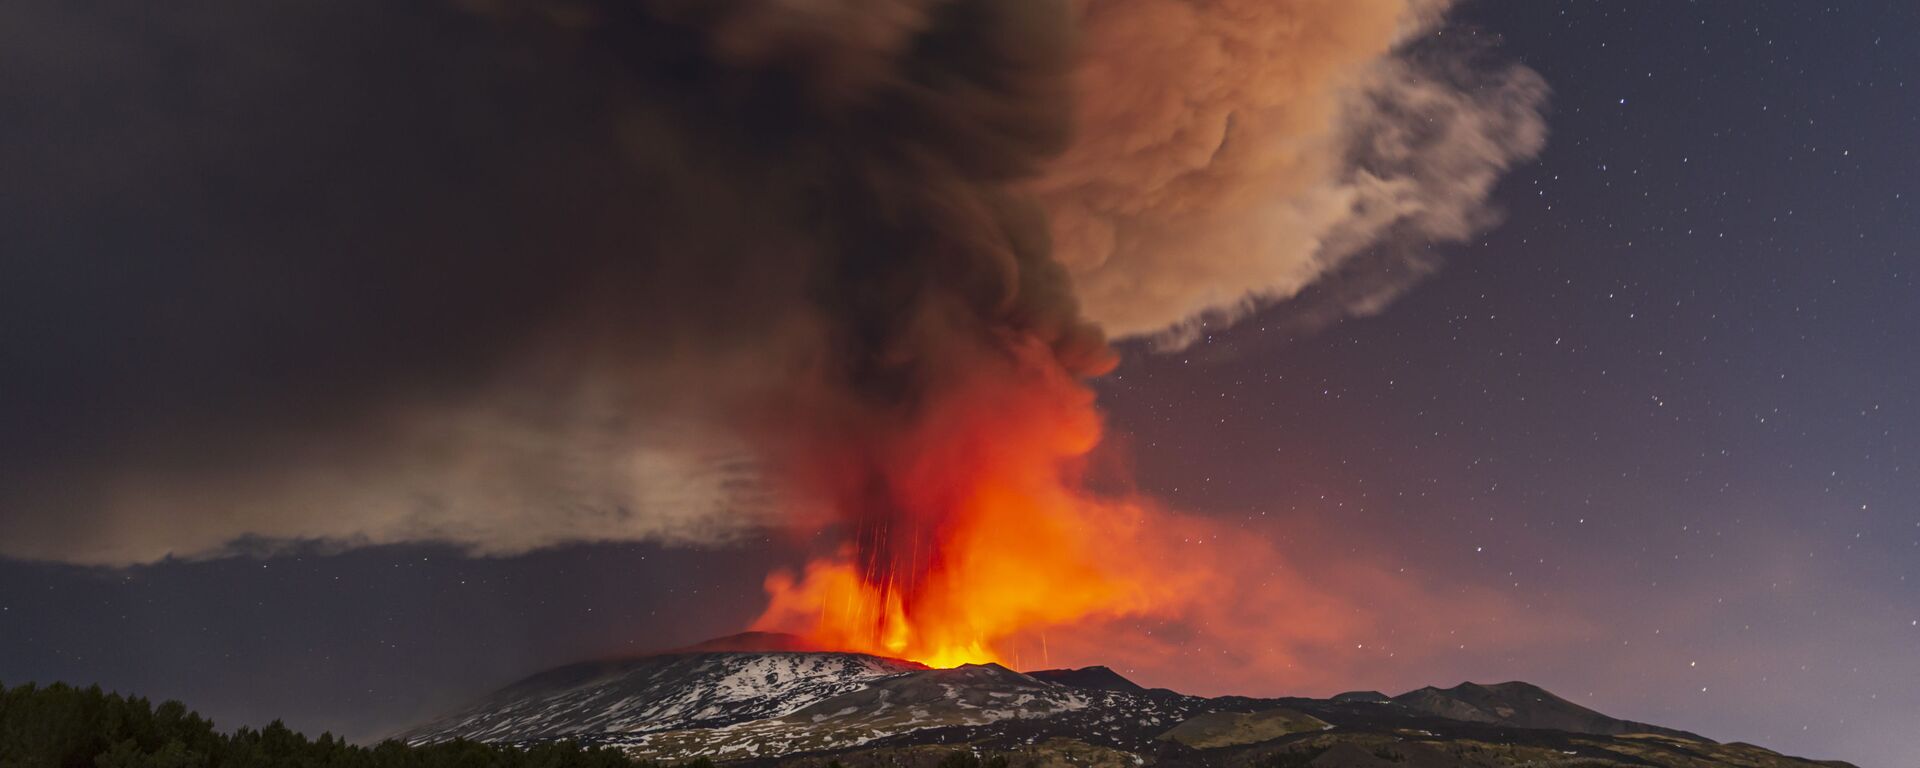 Вид на извержение вулкана Этна с сицилийской коммуны Николози, Италия - Sputnik Грузия, 1920, 13.02.2022